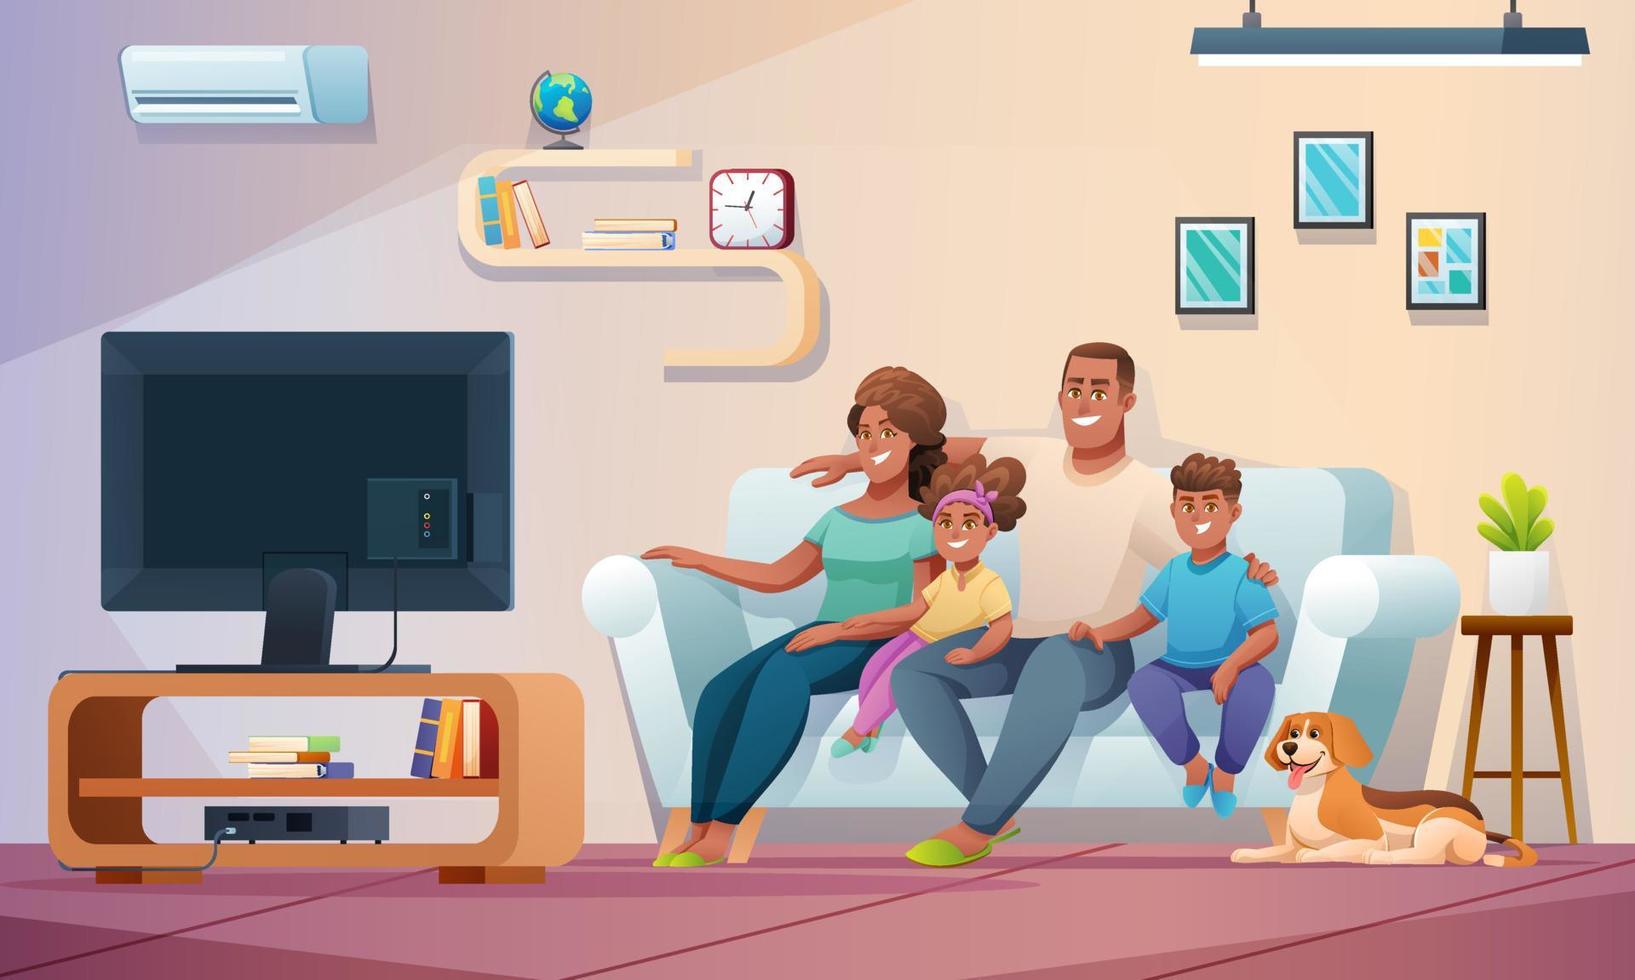 família feliz assistindo televisão juntos na sala de estar. ilustração de família em estilo cartoon vetor